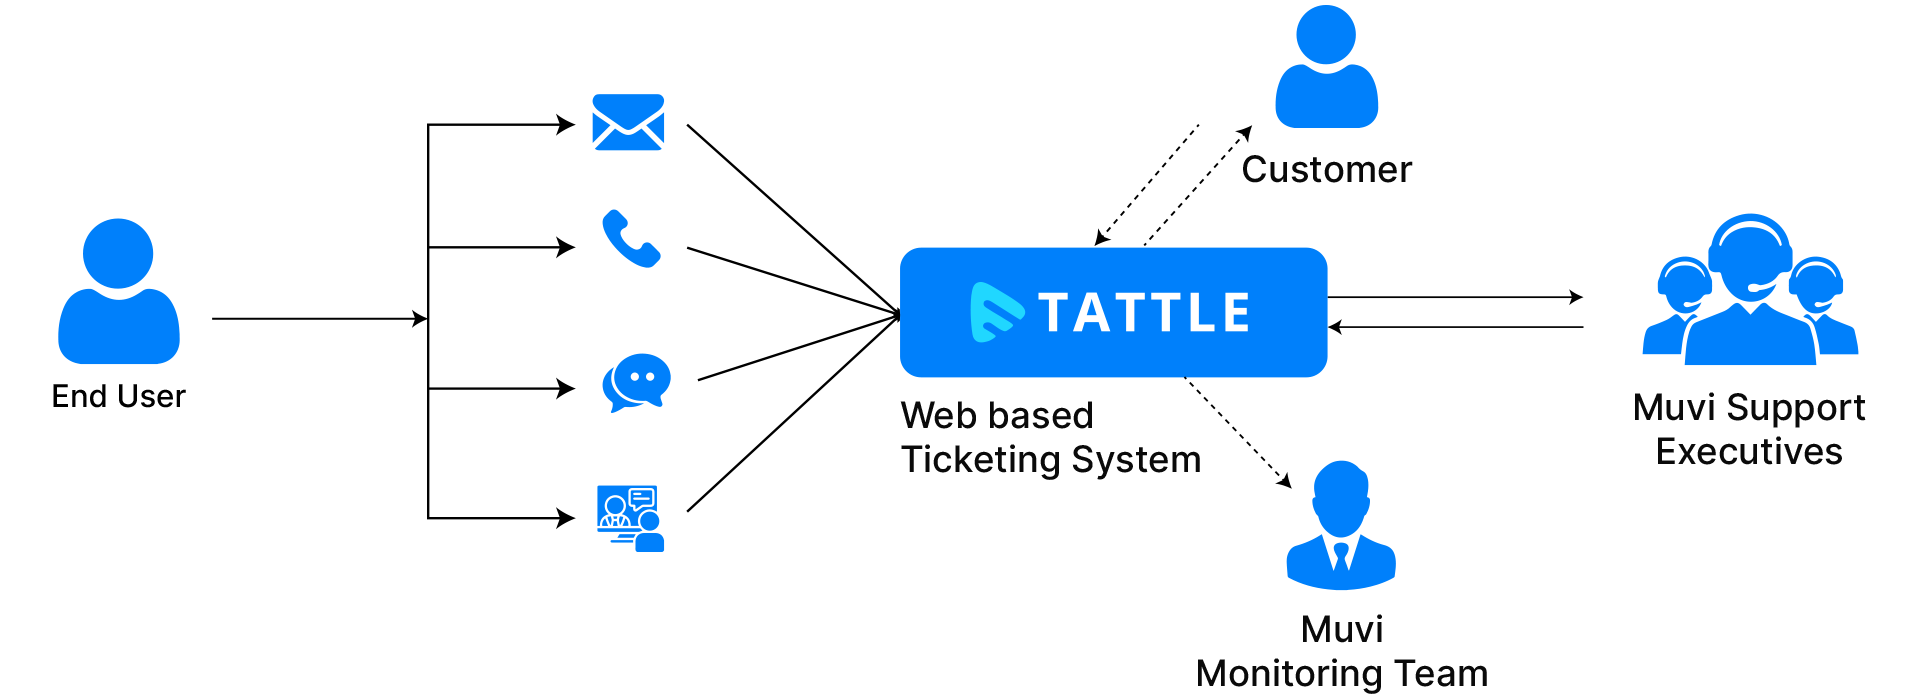 Tattle Flowchart - End User Support